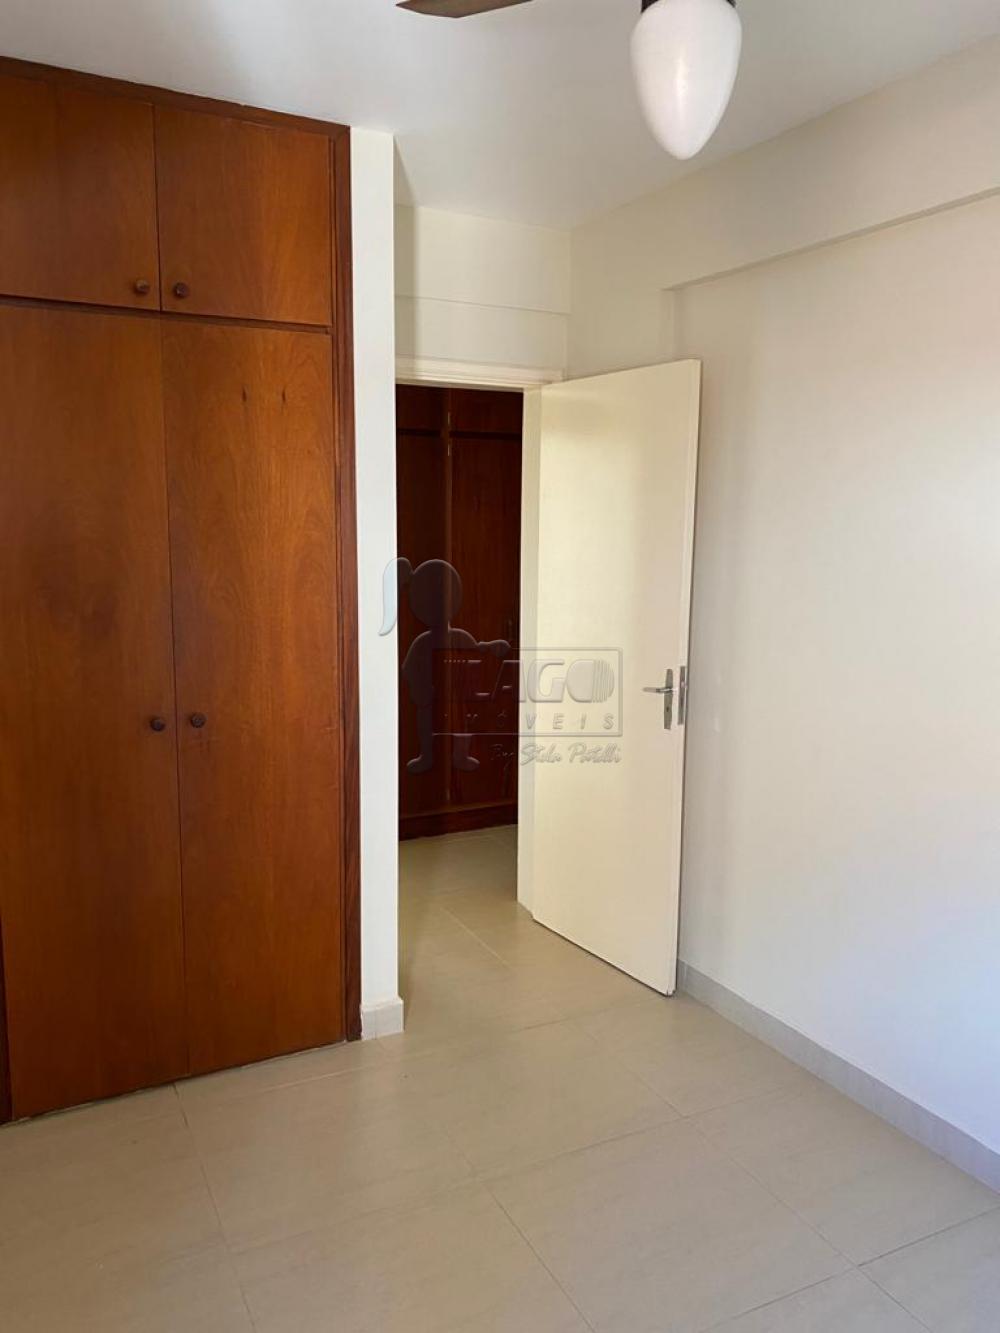 Alugar Apartamentos / Cobertura em Ribeirão Preto R$ 2.300,00 - Foto 9